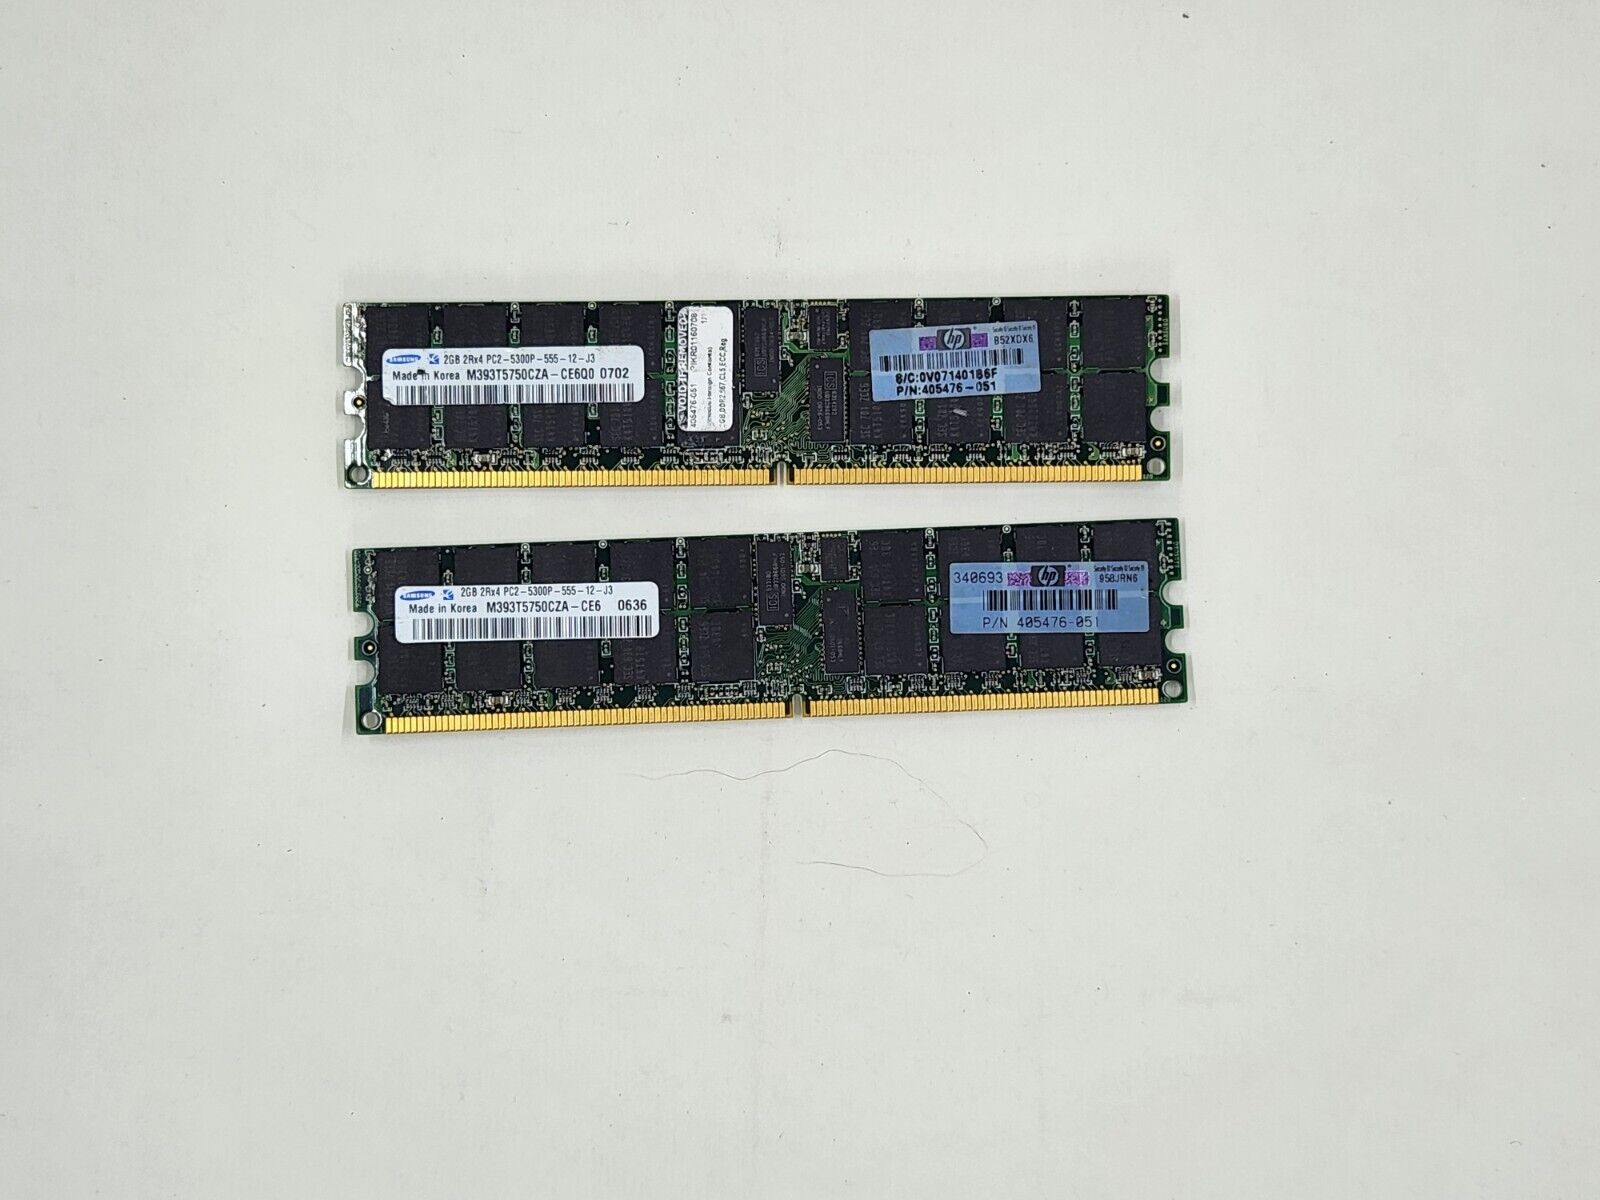 DDR2 RAM 6GB 2 x 2GB Samsung M393T5750CZA-CE6 240-Pin PC2-5300P + 2GB assorted